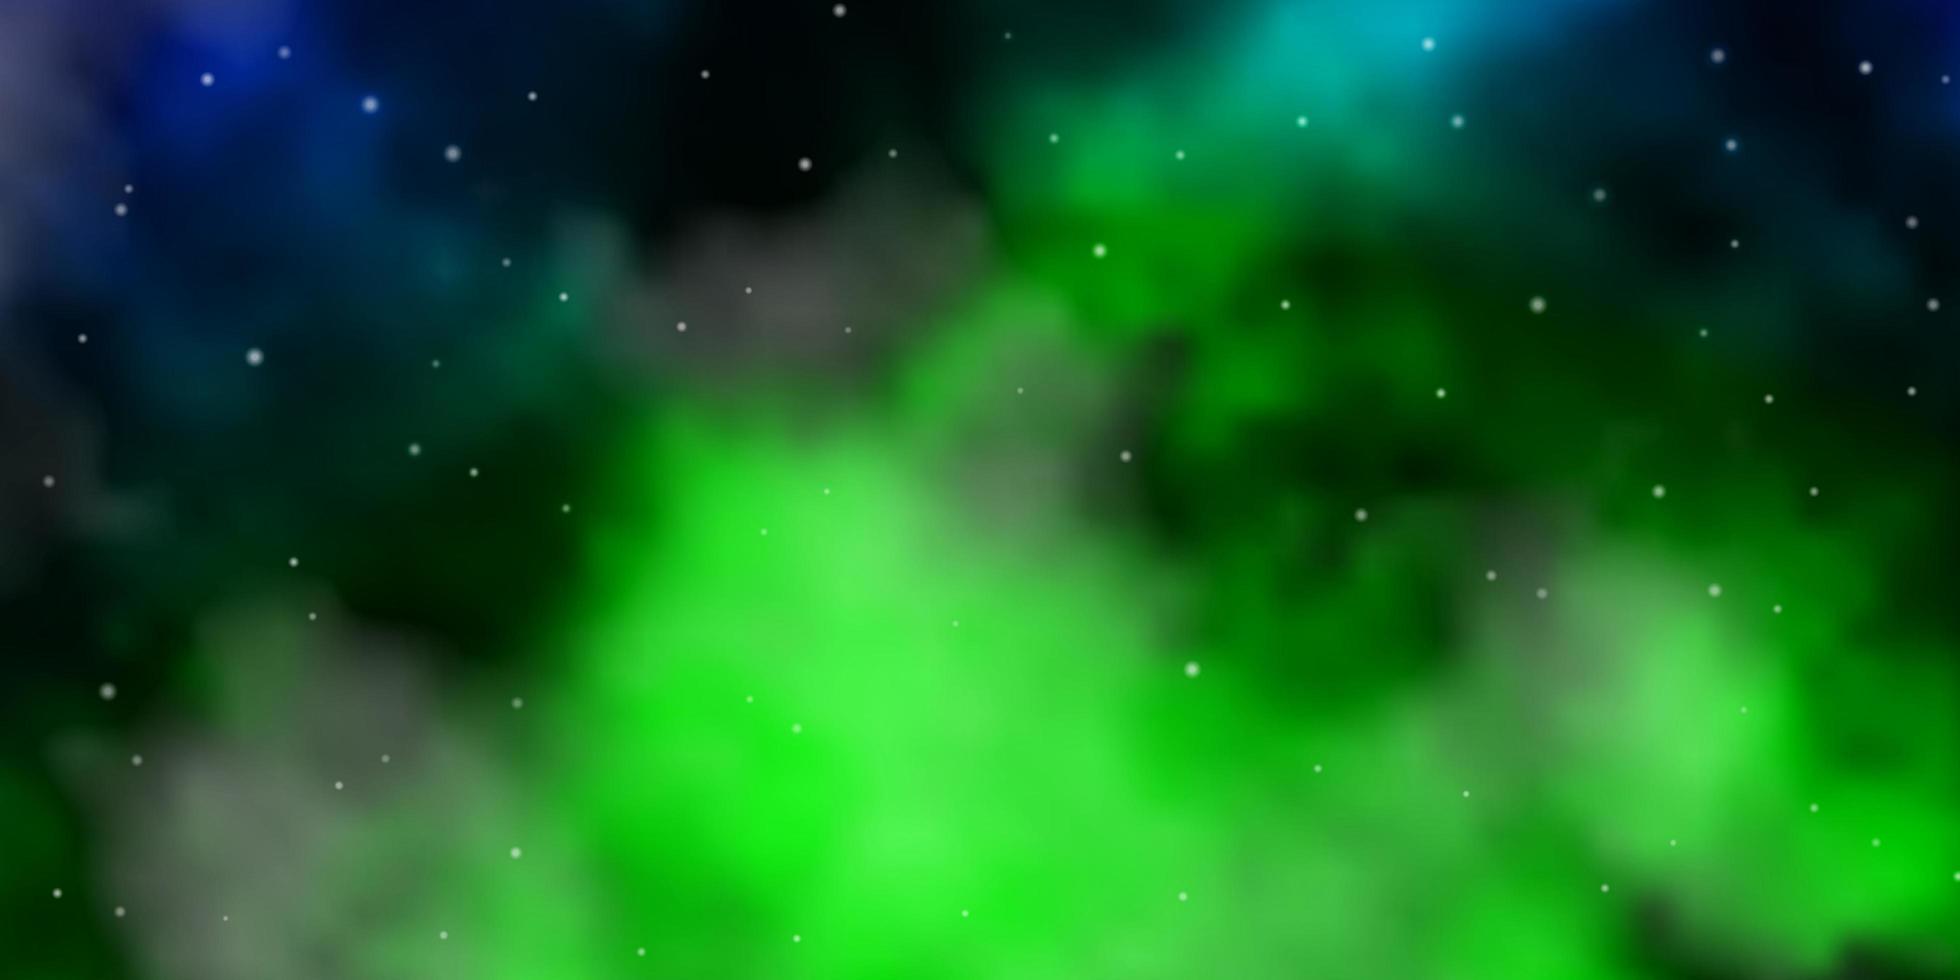 layout de vetor azul claro verde com estrelas brilhantes